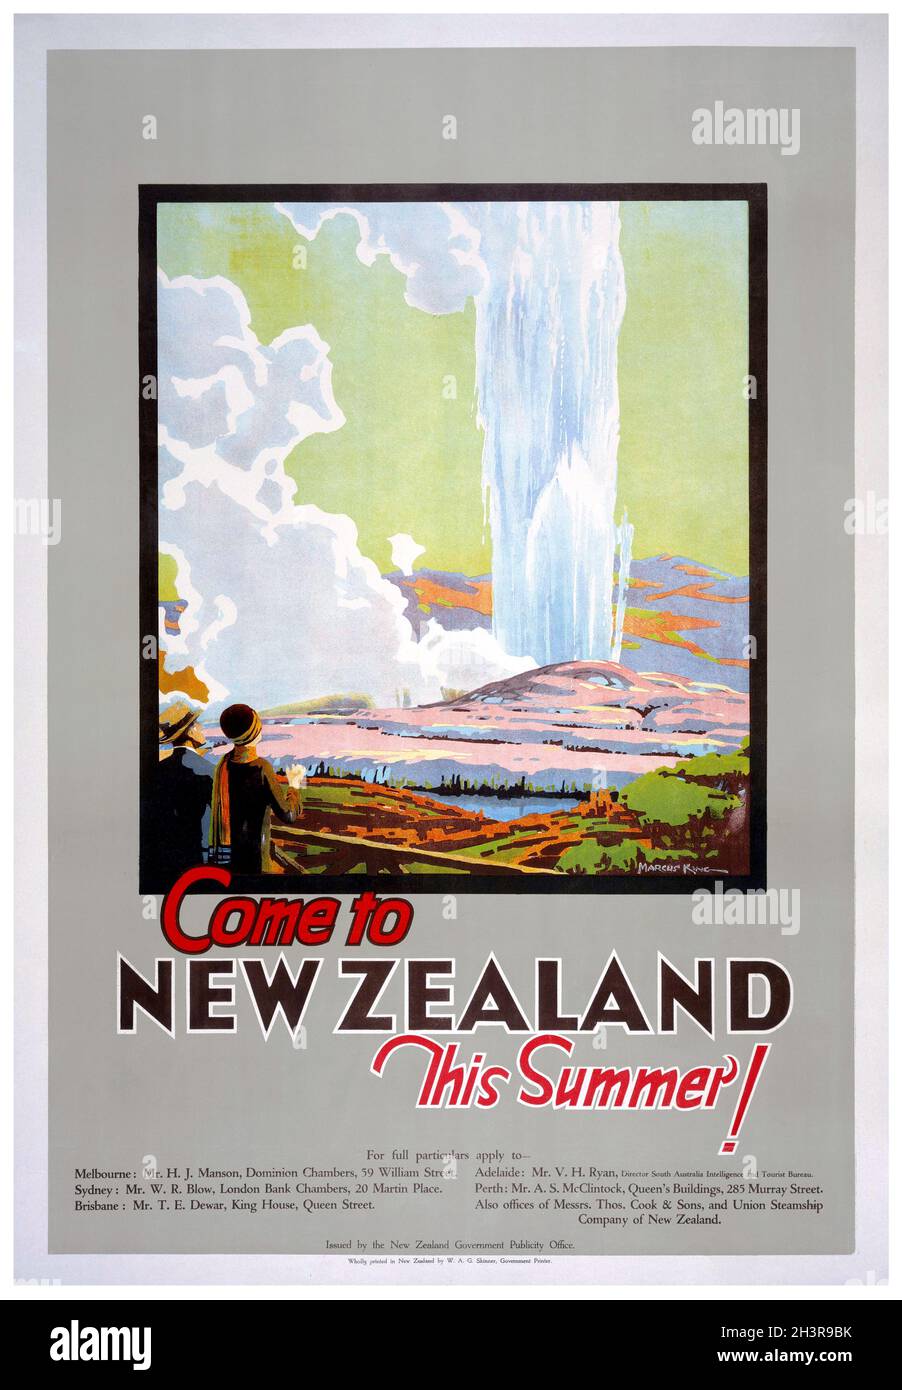 Vieni in Nuova Zelanda questa estate da Marcus King (1891-1983). Poster d'epoca restaurato pubblicato negli anni '30 in Nuova Zelanda. Foto Stock